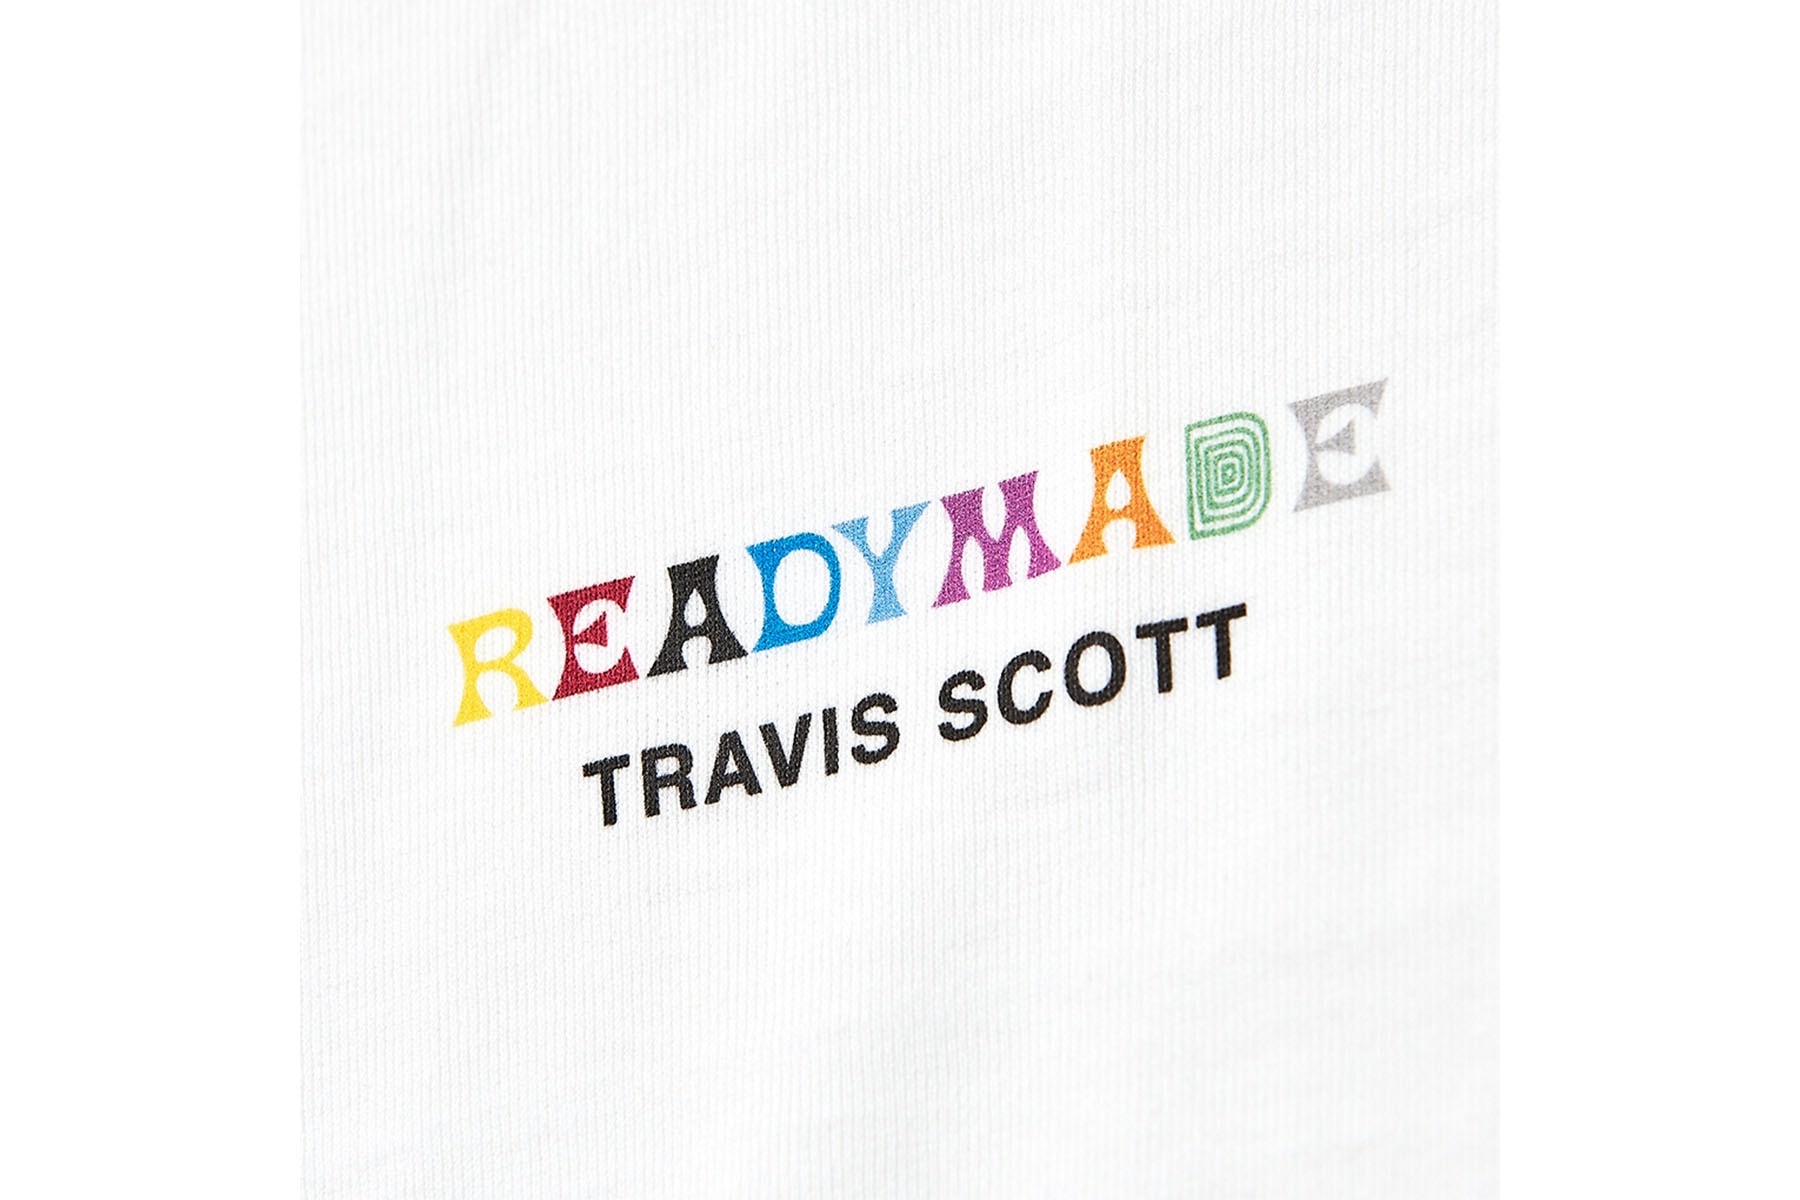 レディメイド x トラヴィス・スコット READYMADE が Travis Scott との最新コラボアイテムとなる3枚組パック T シャツを発売